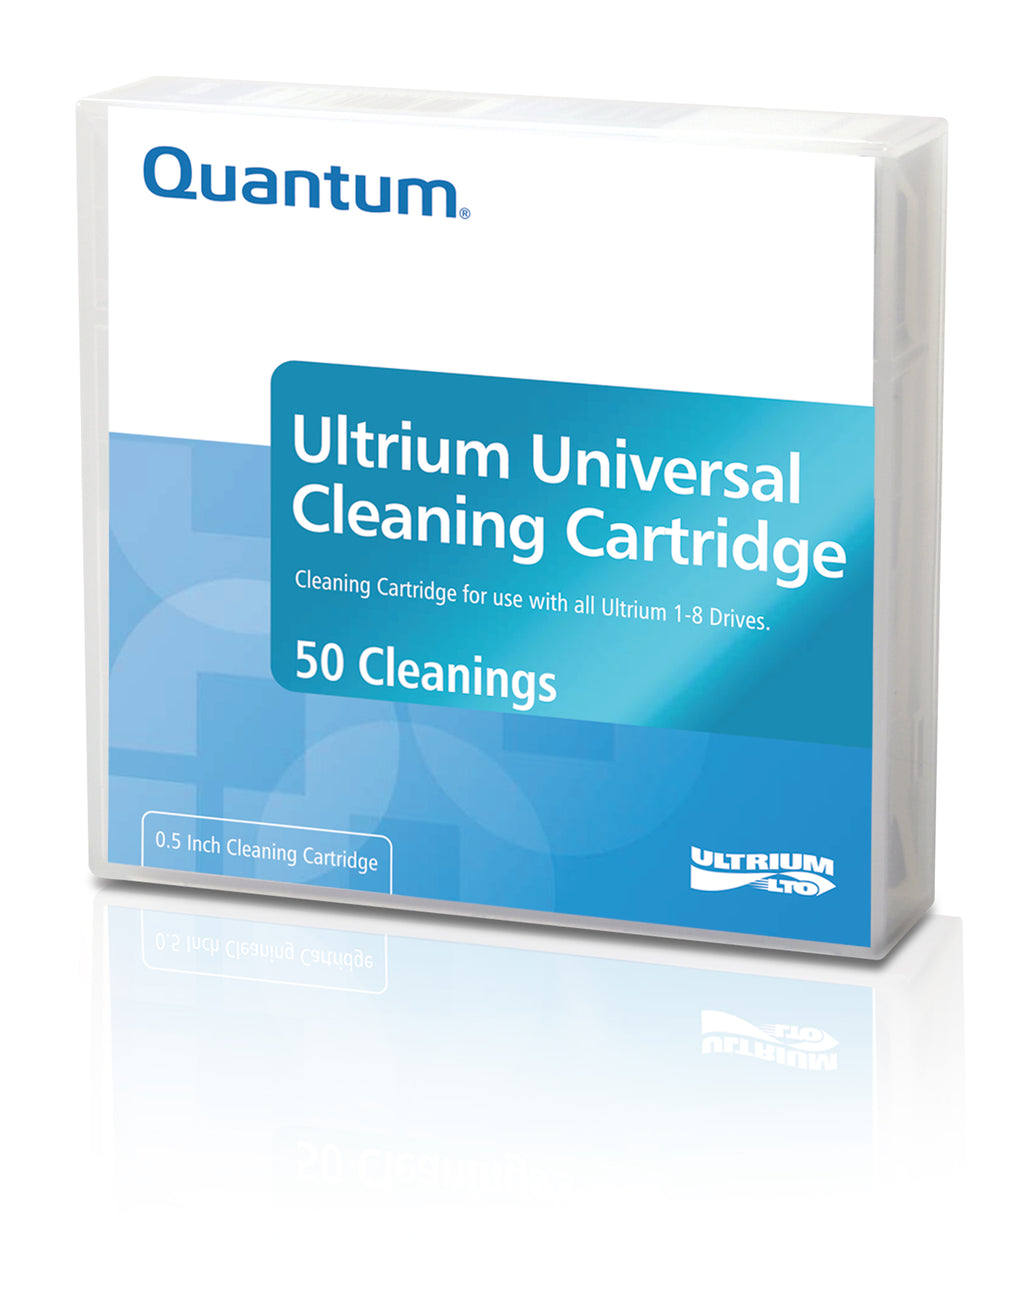 Quantum LTO Ultrium Universal Cleaning Cartridge MR-LUCQN-01